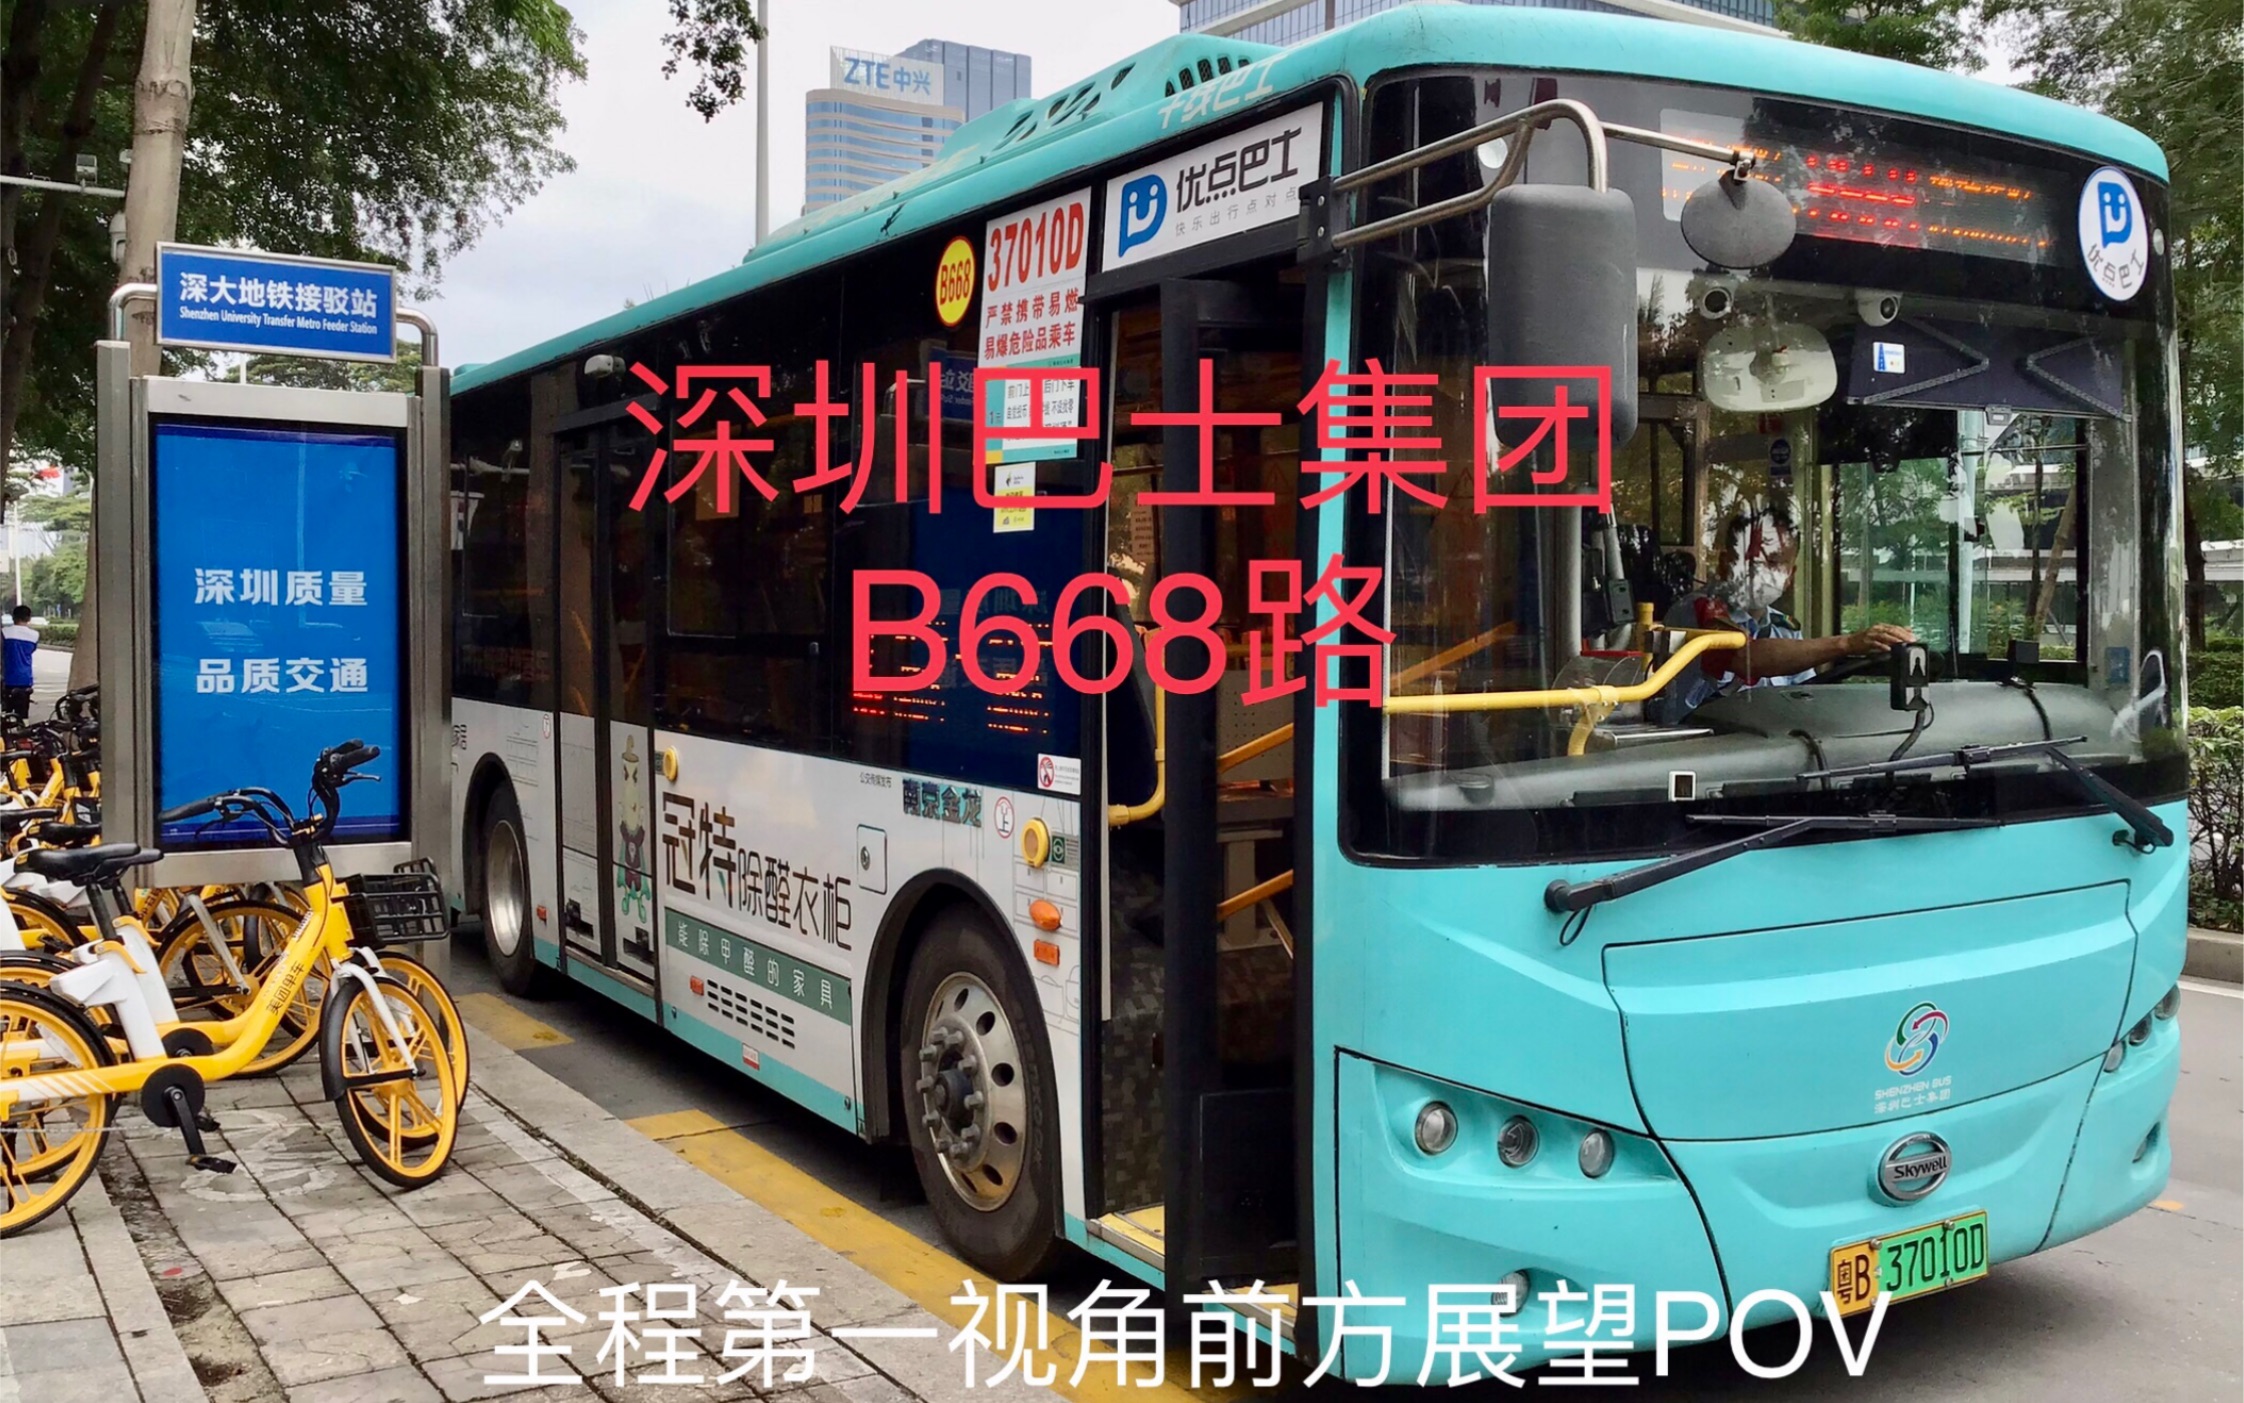 「穿梭于科技园之间」深圳巴士集团b668路全程第一视角前方展望po 